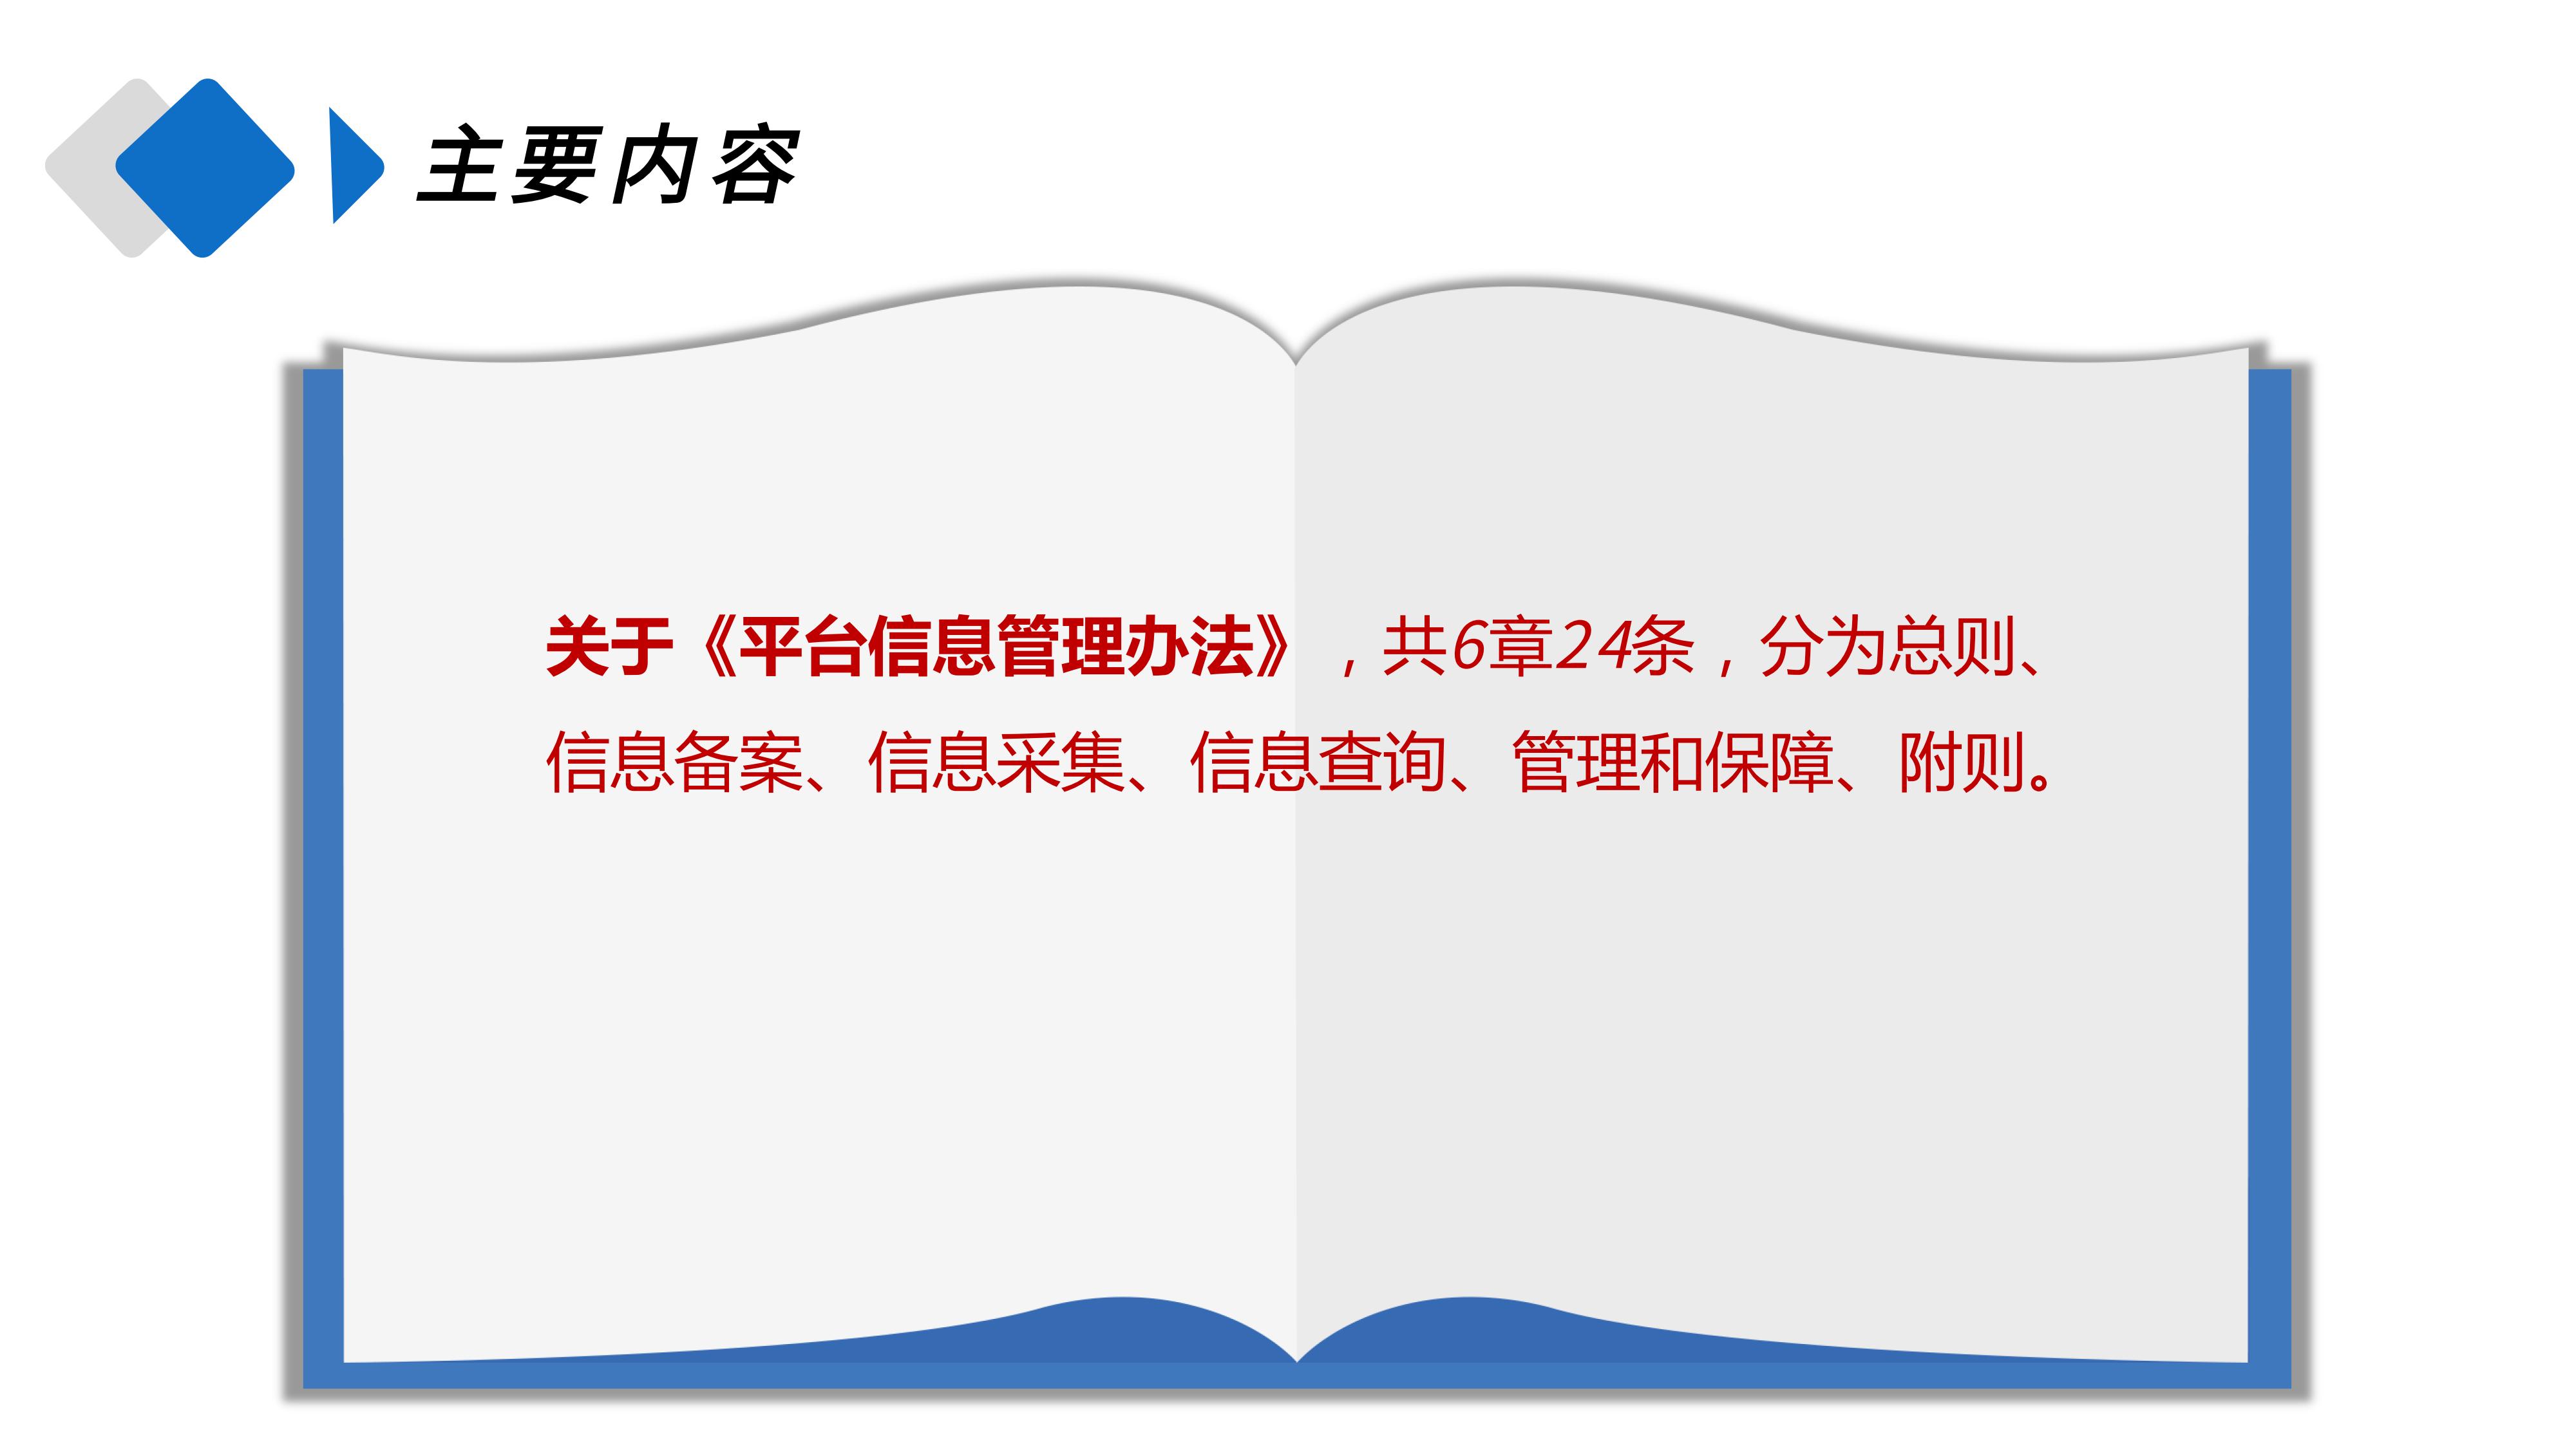 上海市家政服务管理平台信息管理暂行办法_05